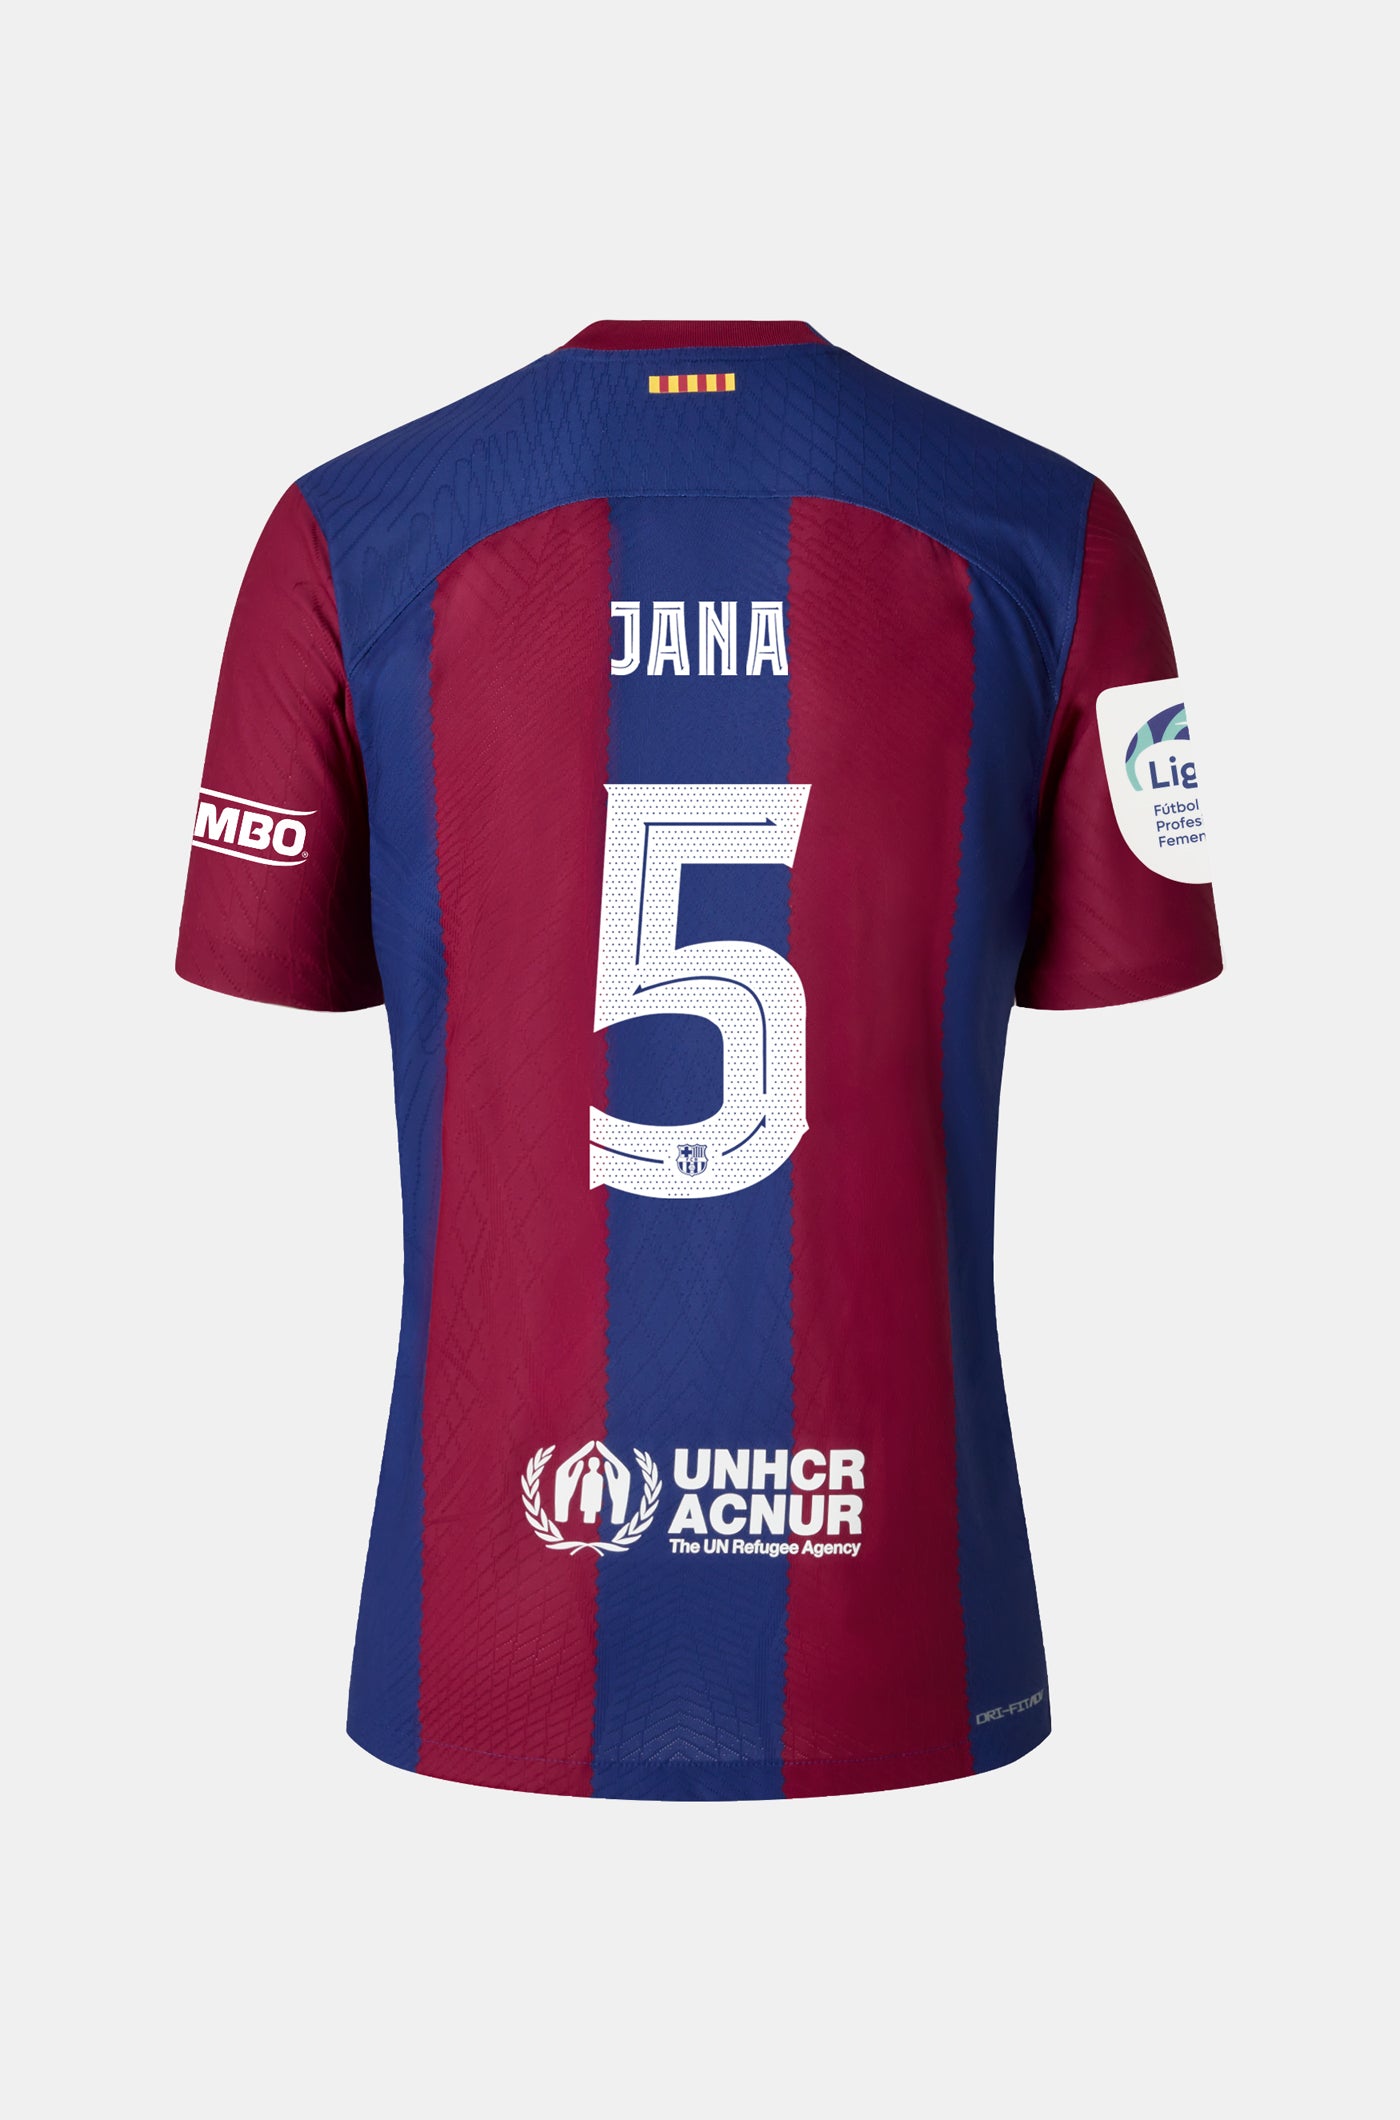 Liga F FC Barcelona Home Shirt 23/24 Player's Edition - Women - JANA